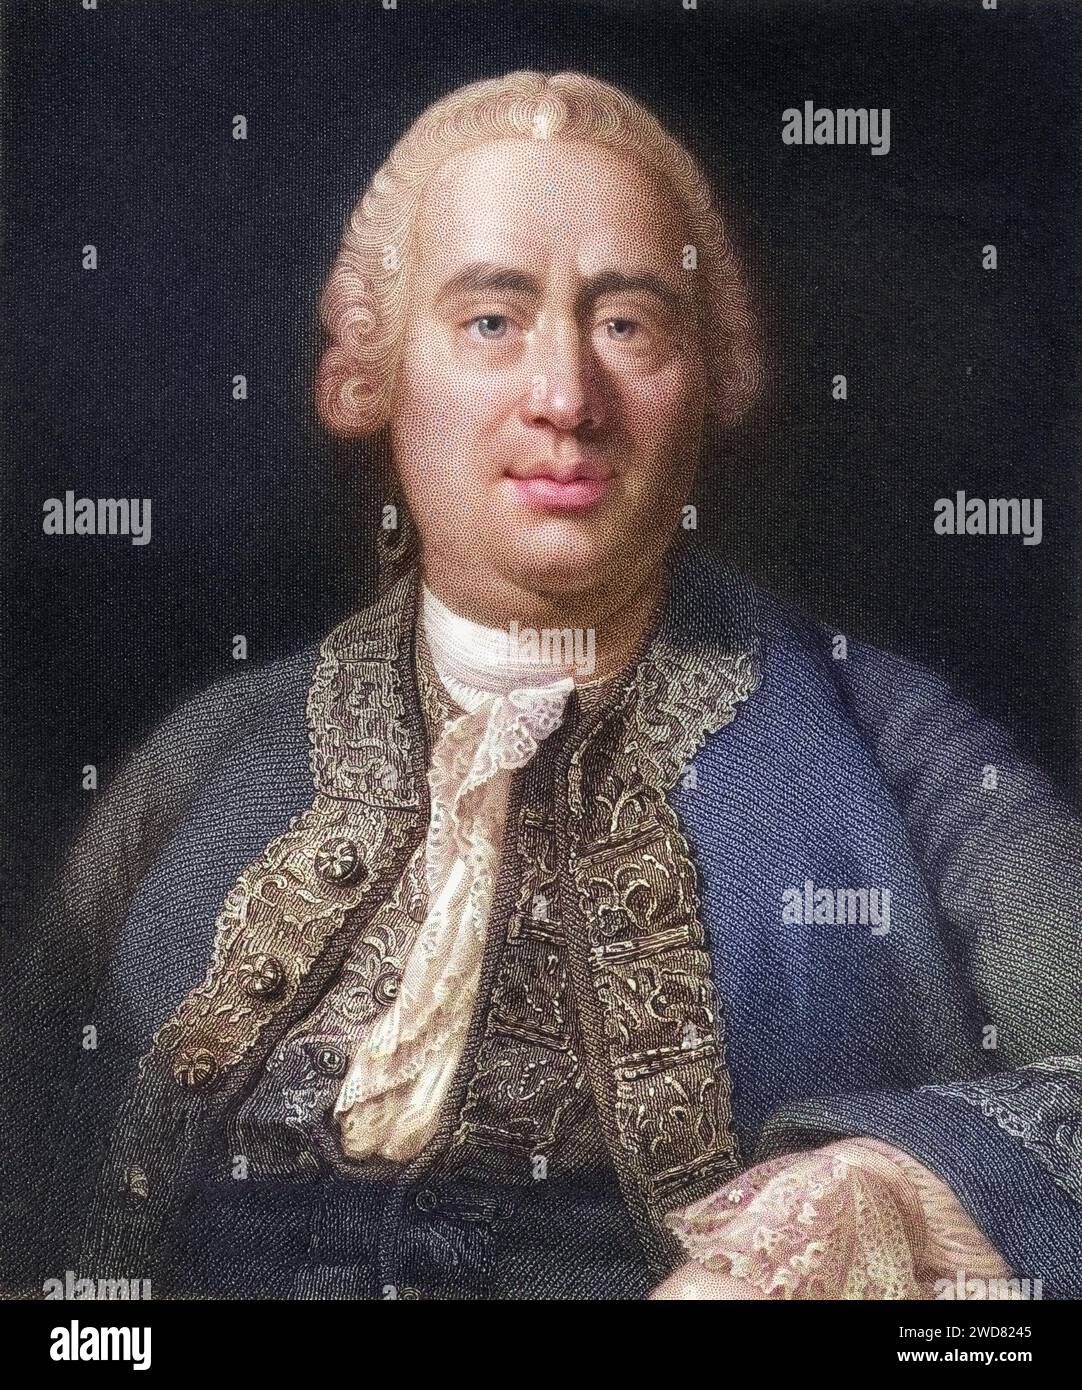 David Hume 1711-1776. Schottischer Historiker und Philosoph. Aus dem Buch Gallery of Portraits,1833., Historisch, digital restaurierte Reproduktion von einer Vorlage aus dem 19. Jahrhundert, Record date not stated Stock Photo